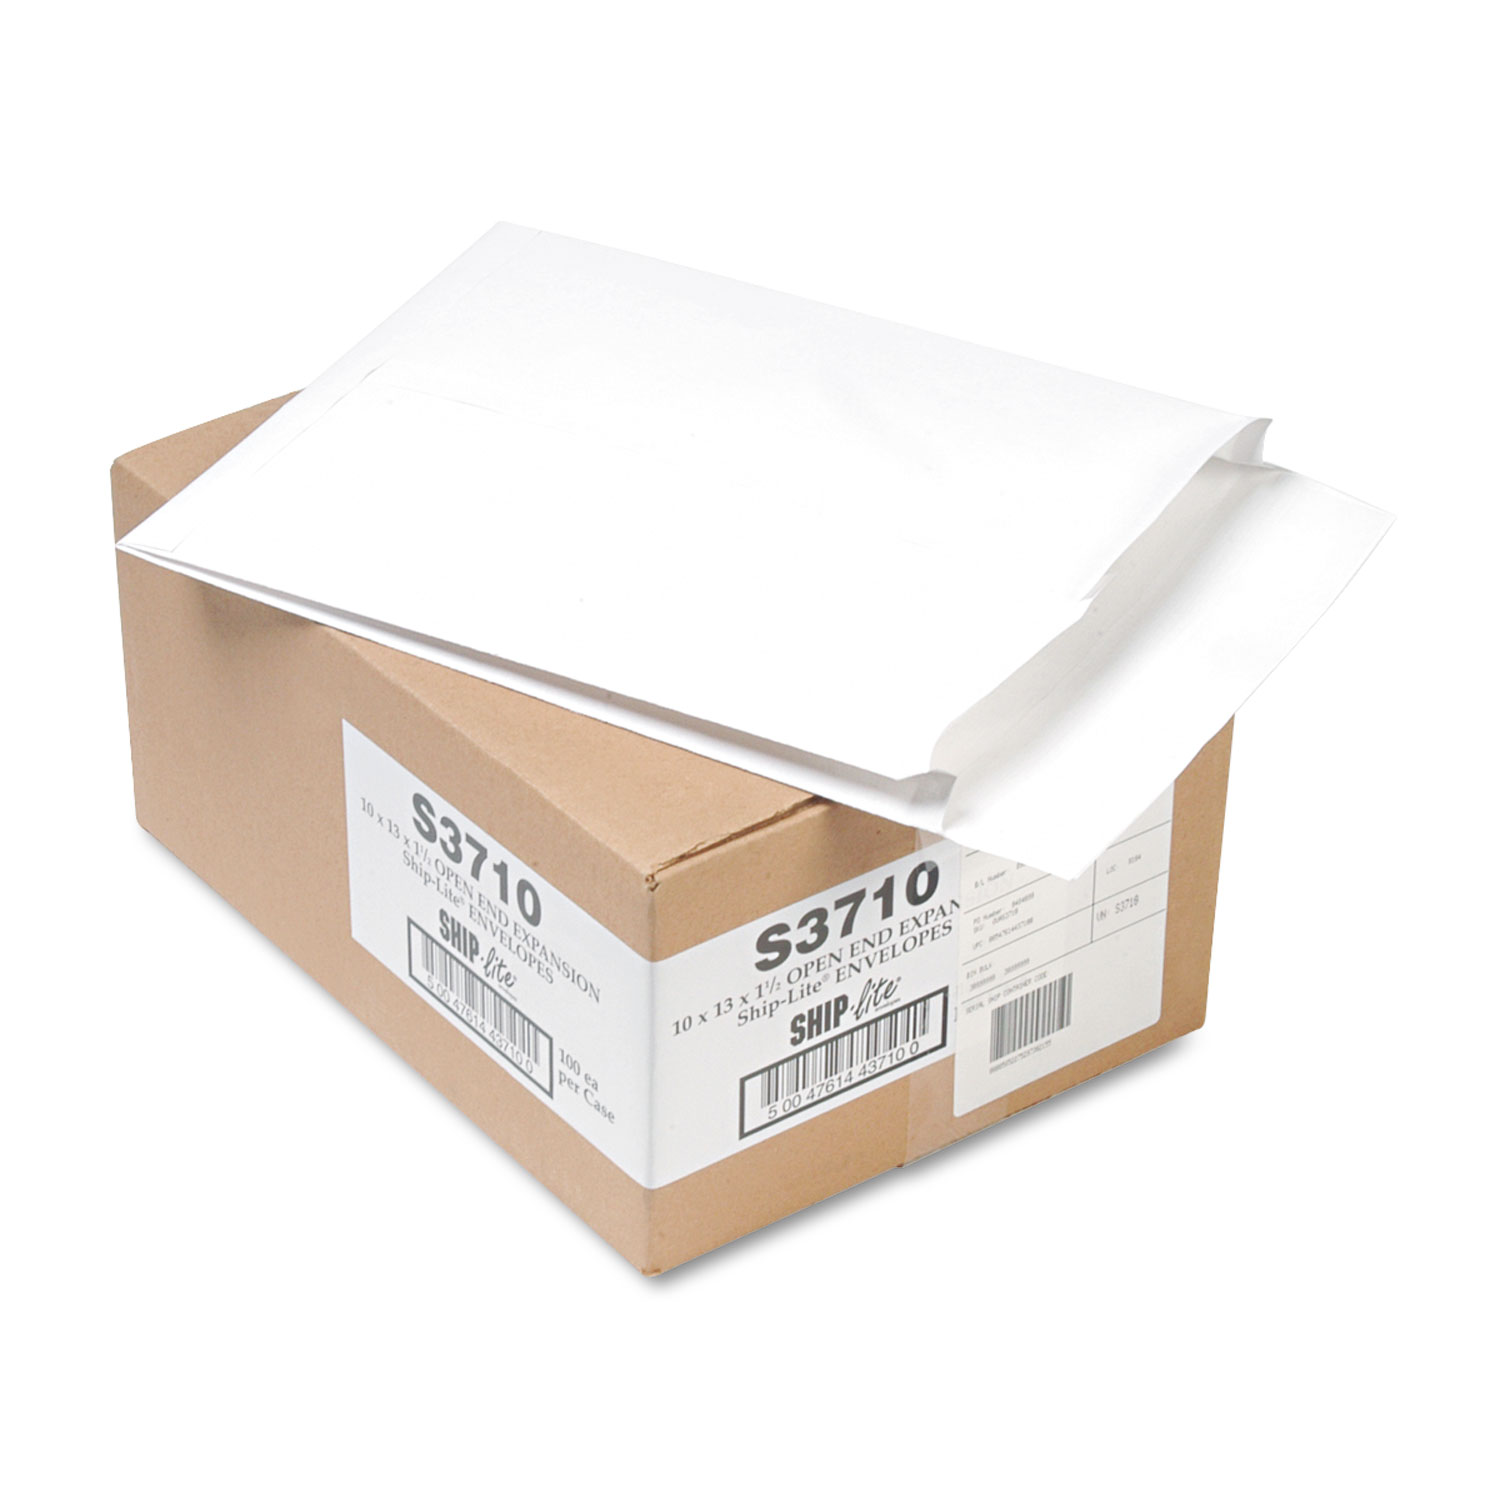 Ship Lite Redi Flap Expansion Mailer, 10 x 13 x 1 1/2, White, 100/Box